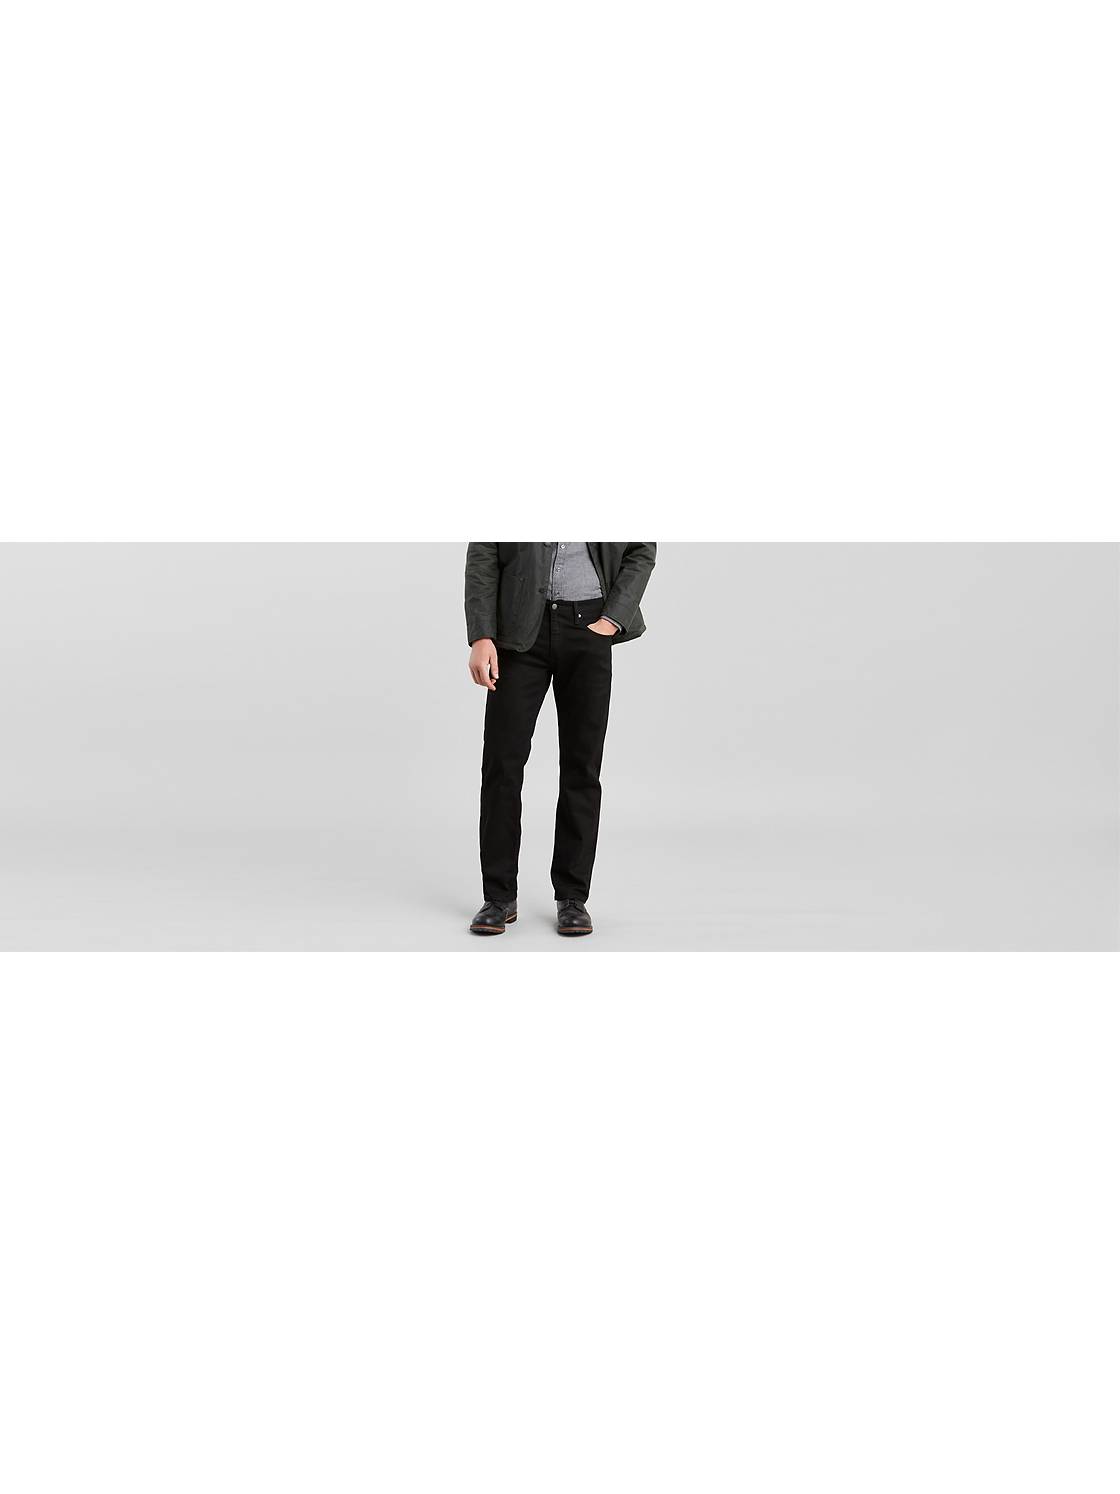 Men's Jeans: Shop Black Ripped Jeans & More | Levi's® US